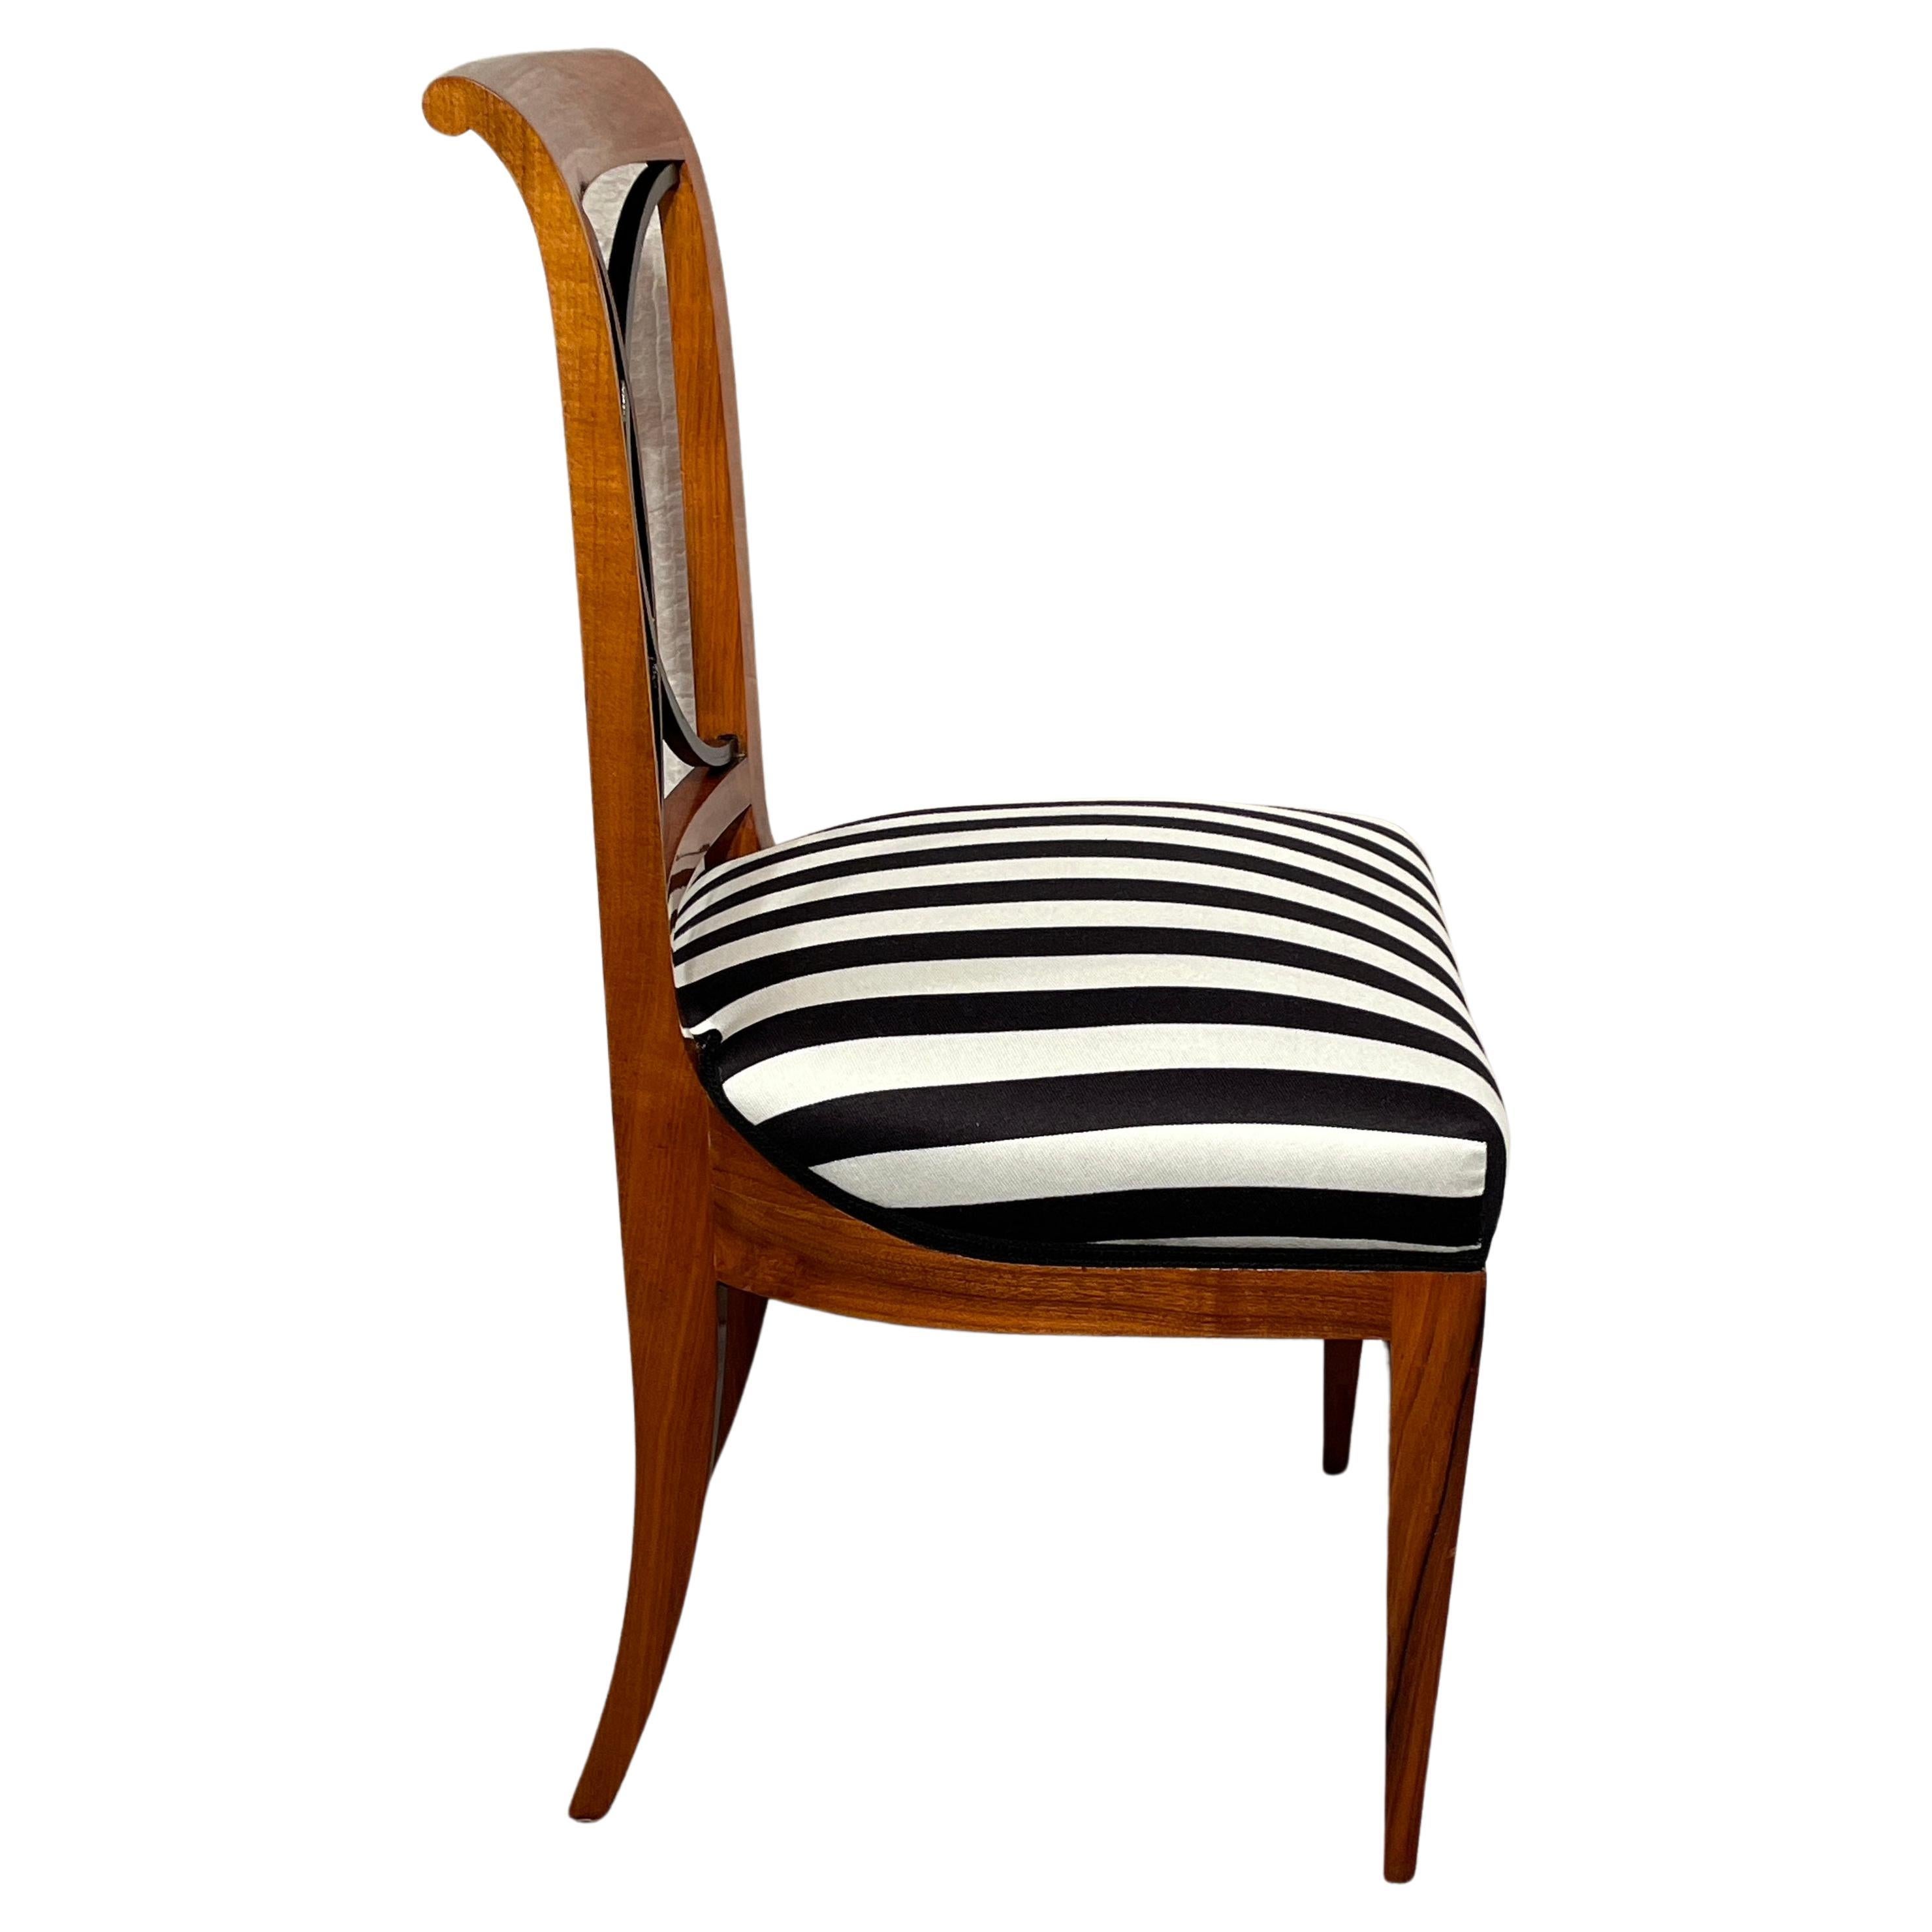 Dieses Set aus 4 Biedermeier-Stühlen stammt aus der Zeit um 1820 und kommt aus Süddeutschland. Die Stühle sind mit einem schönen Kirschbaumfurnier versehen. Die Rückseite zeigt ein sehr ungewöhnliches verflochtenes ebonisiertes C.C.-Design. Die